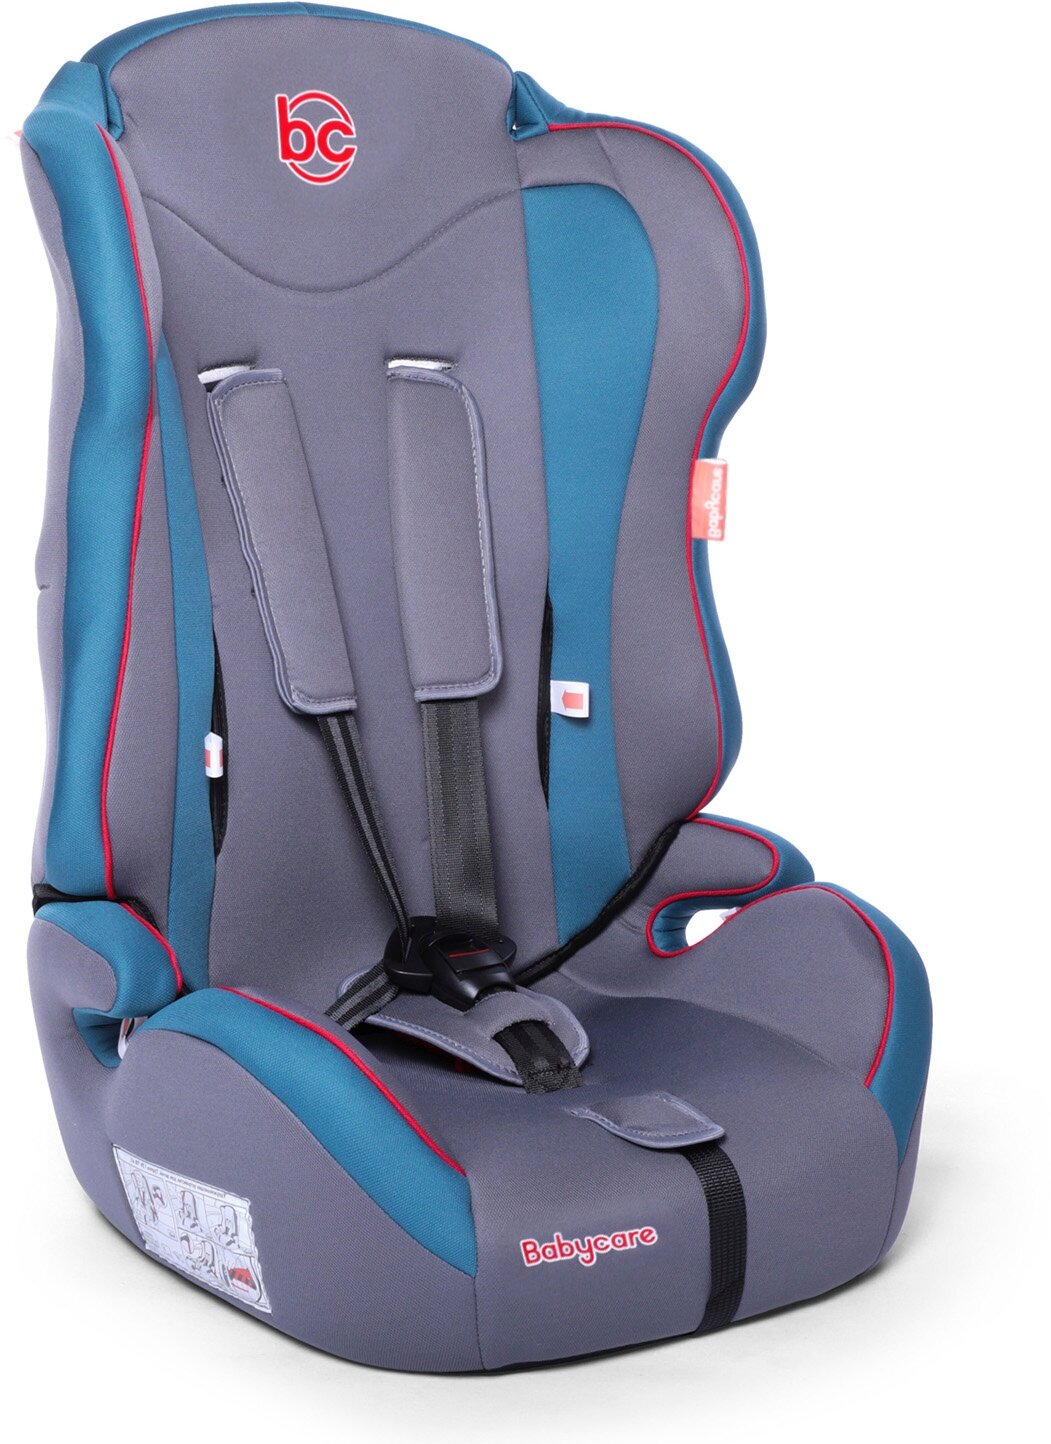 Baby Care Детское автомобильное кресло Upiter(без вкладыша) гр I/II/III, 9-36кг, (1-12лет),голубой/серый